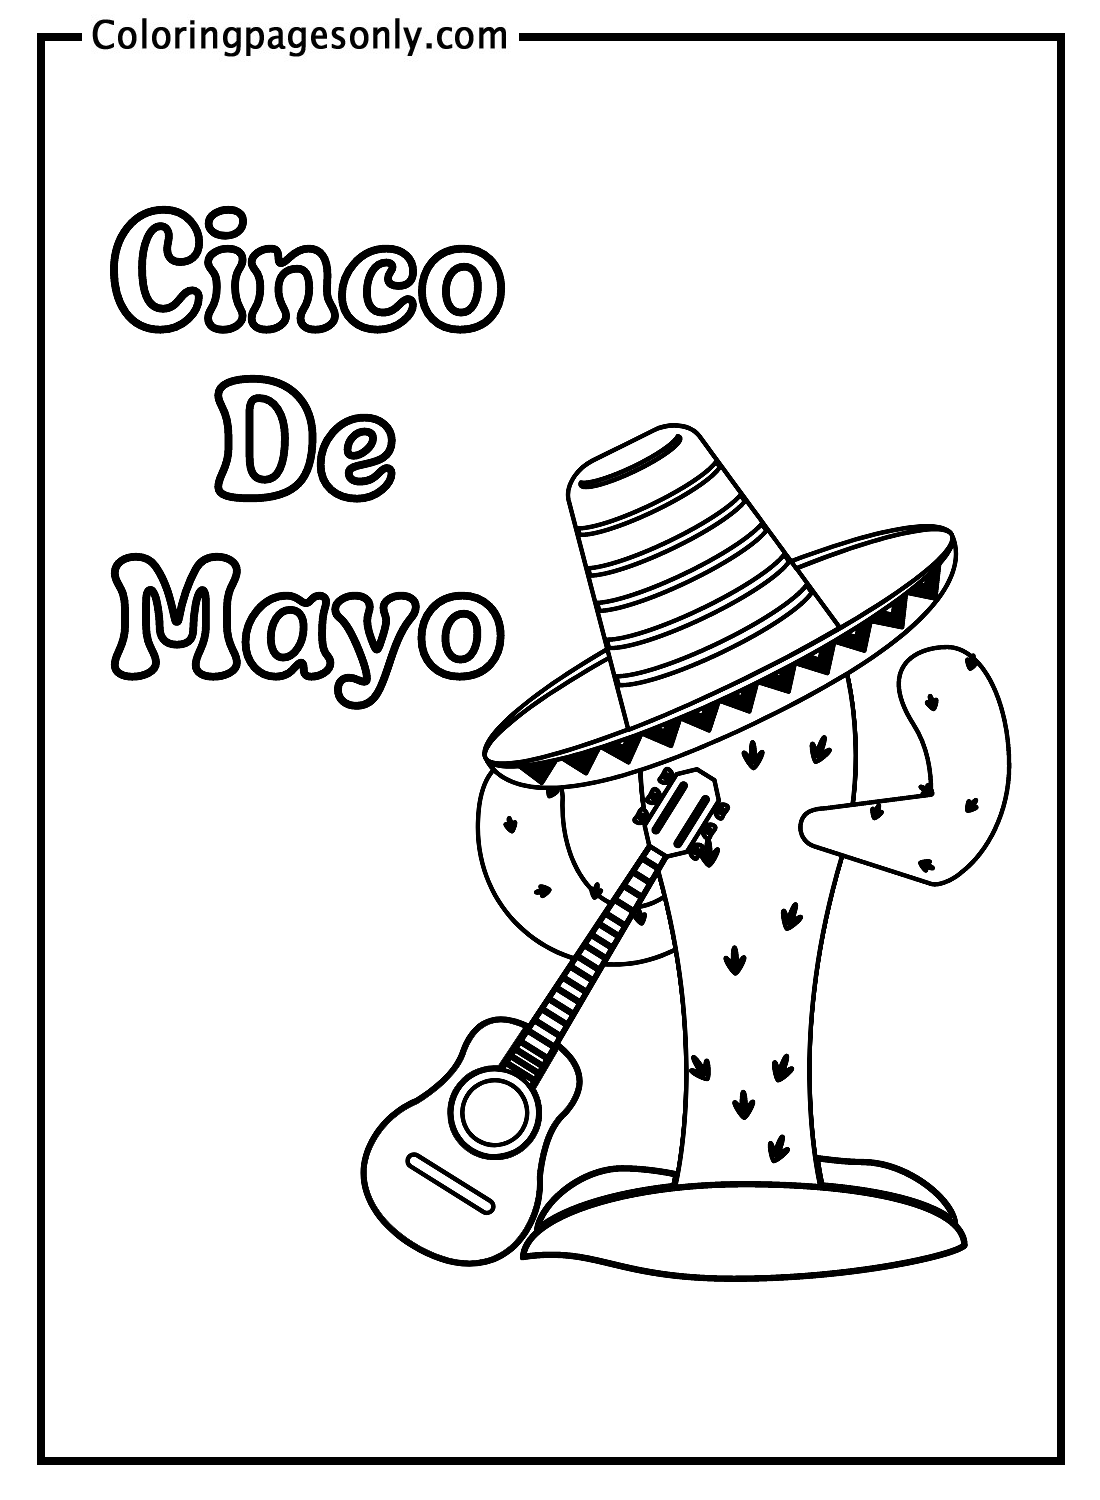 Cactus y sombrero mexicano con guitarra del Cinco de Mayo